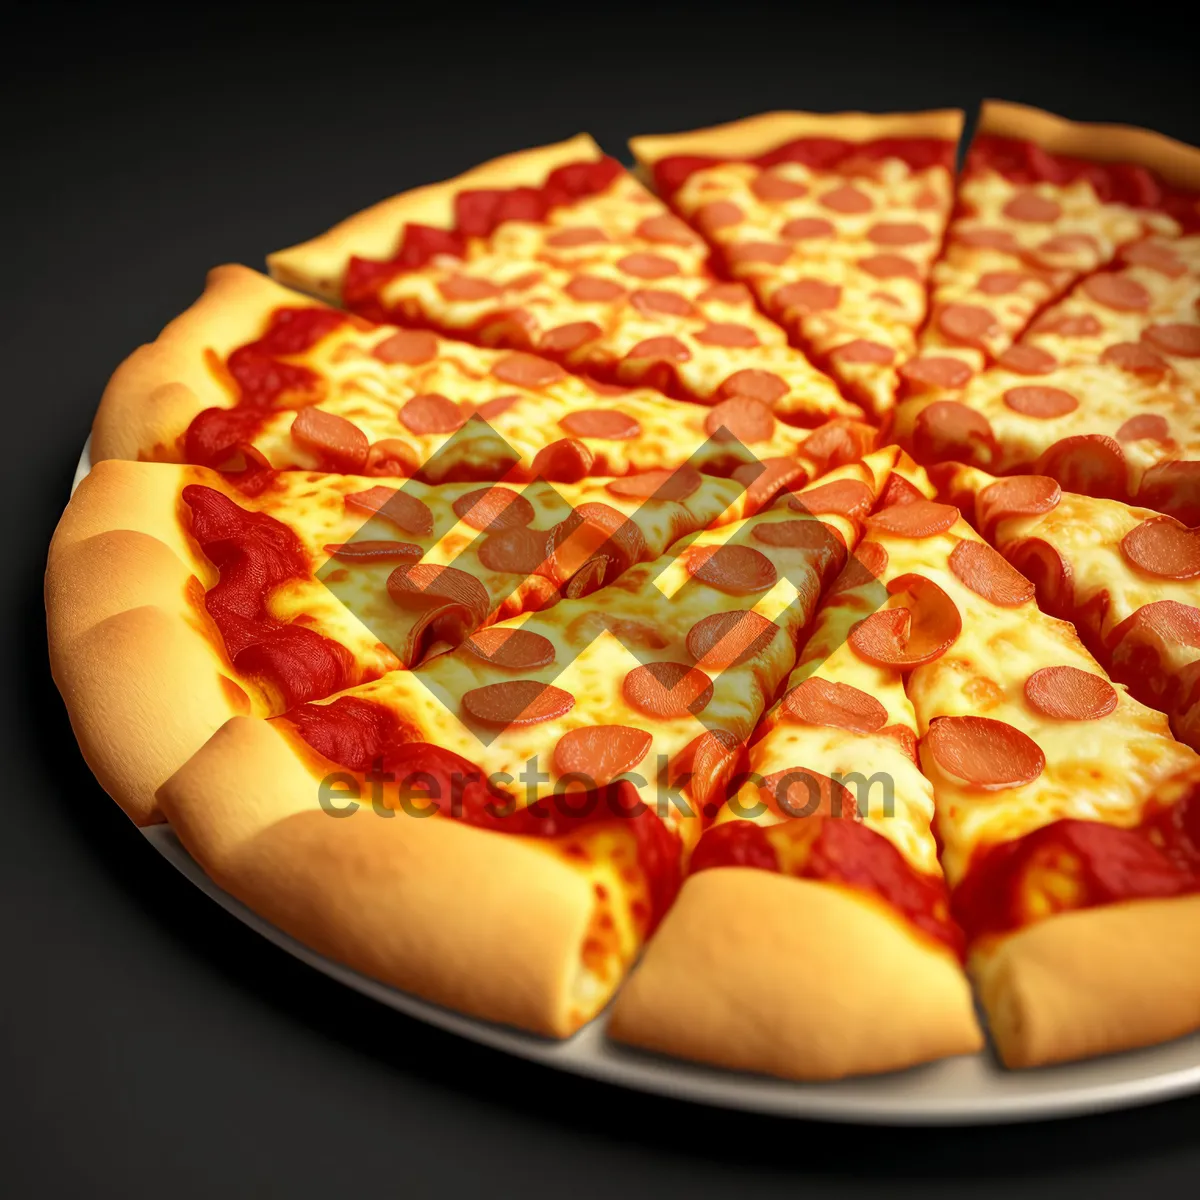 Picture of Delicious Pepperoni Pizza Slice with Fresh Mozzarella